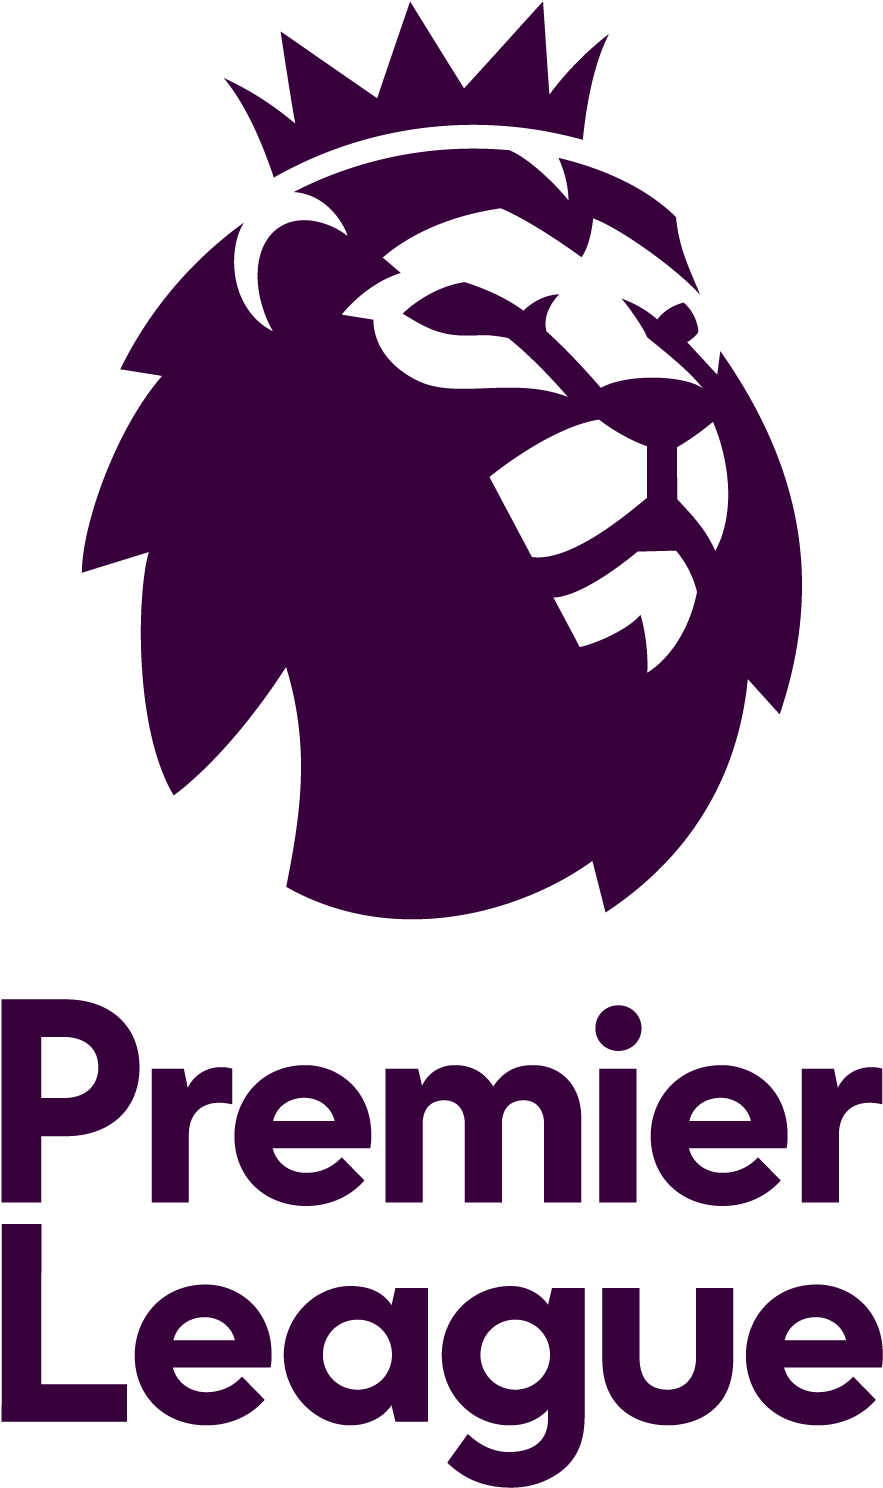 Premier-League